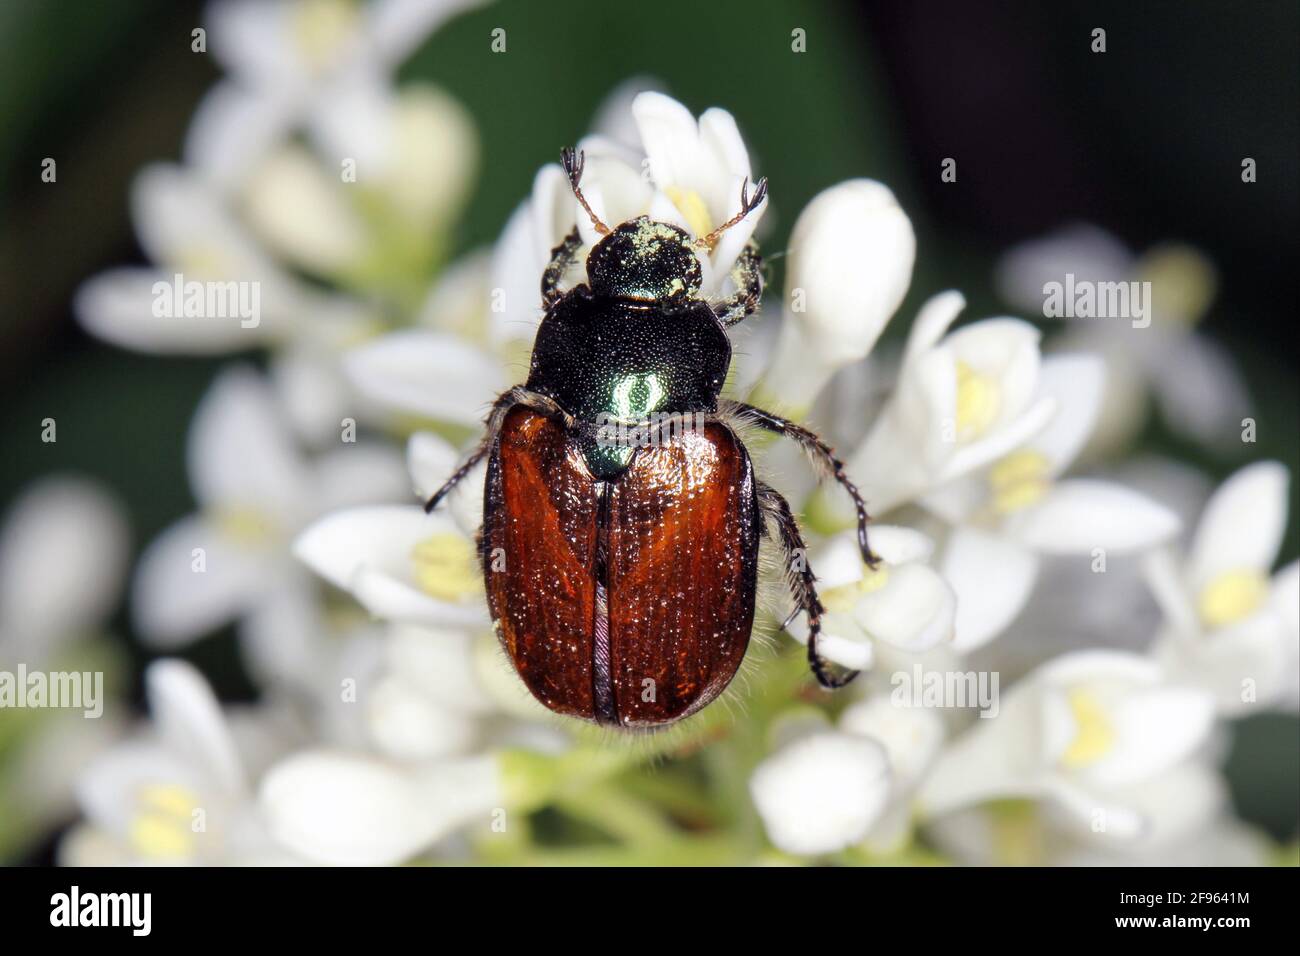 Garden Chafer Beetle – Phyllopertha horticola on flower Stock Photo